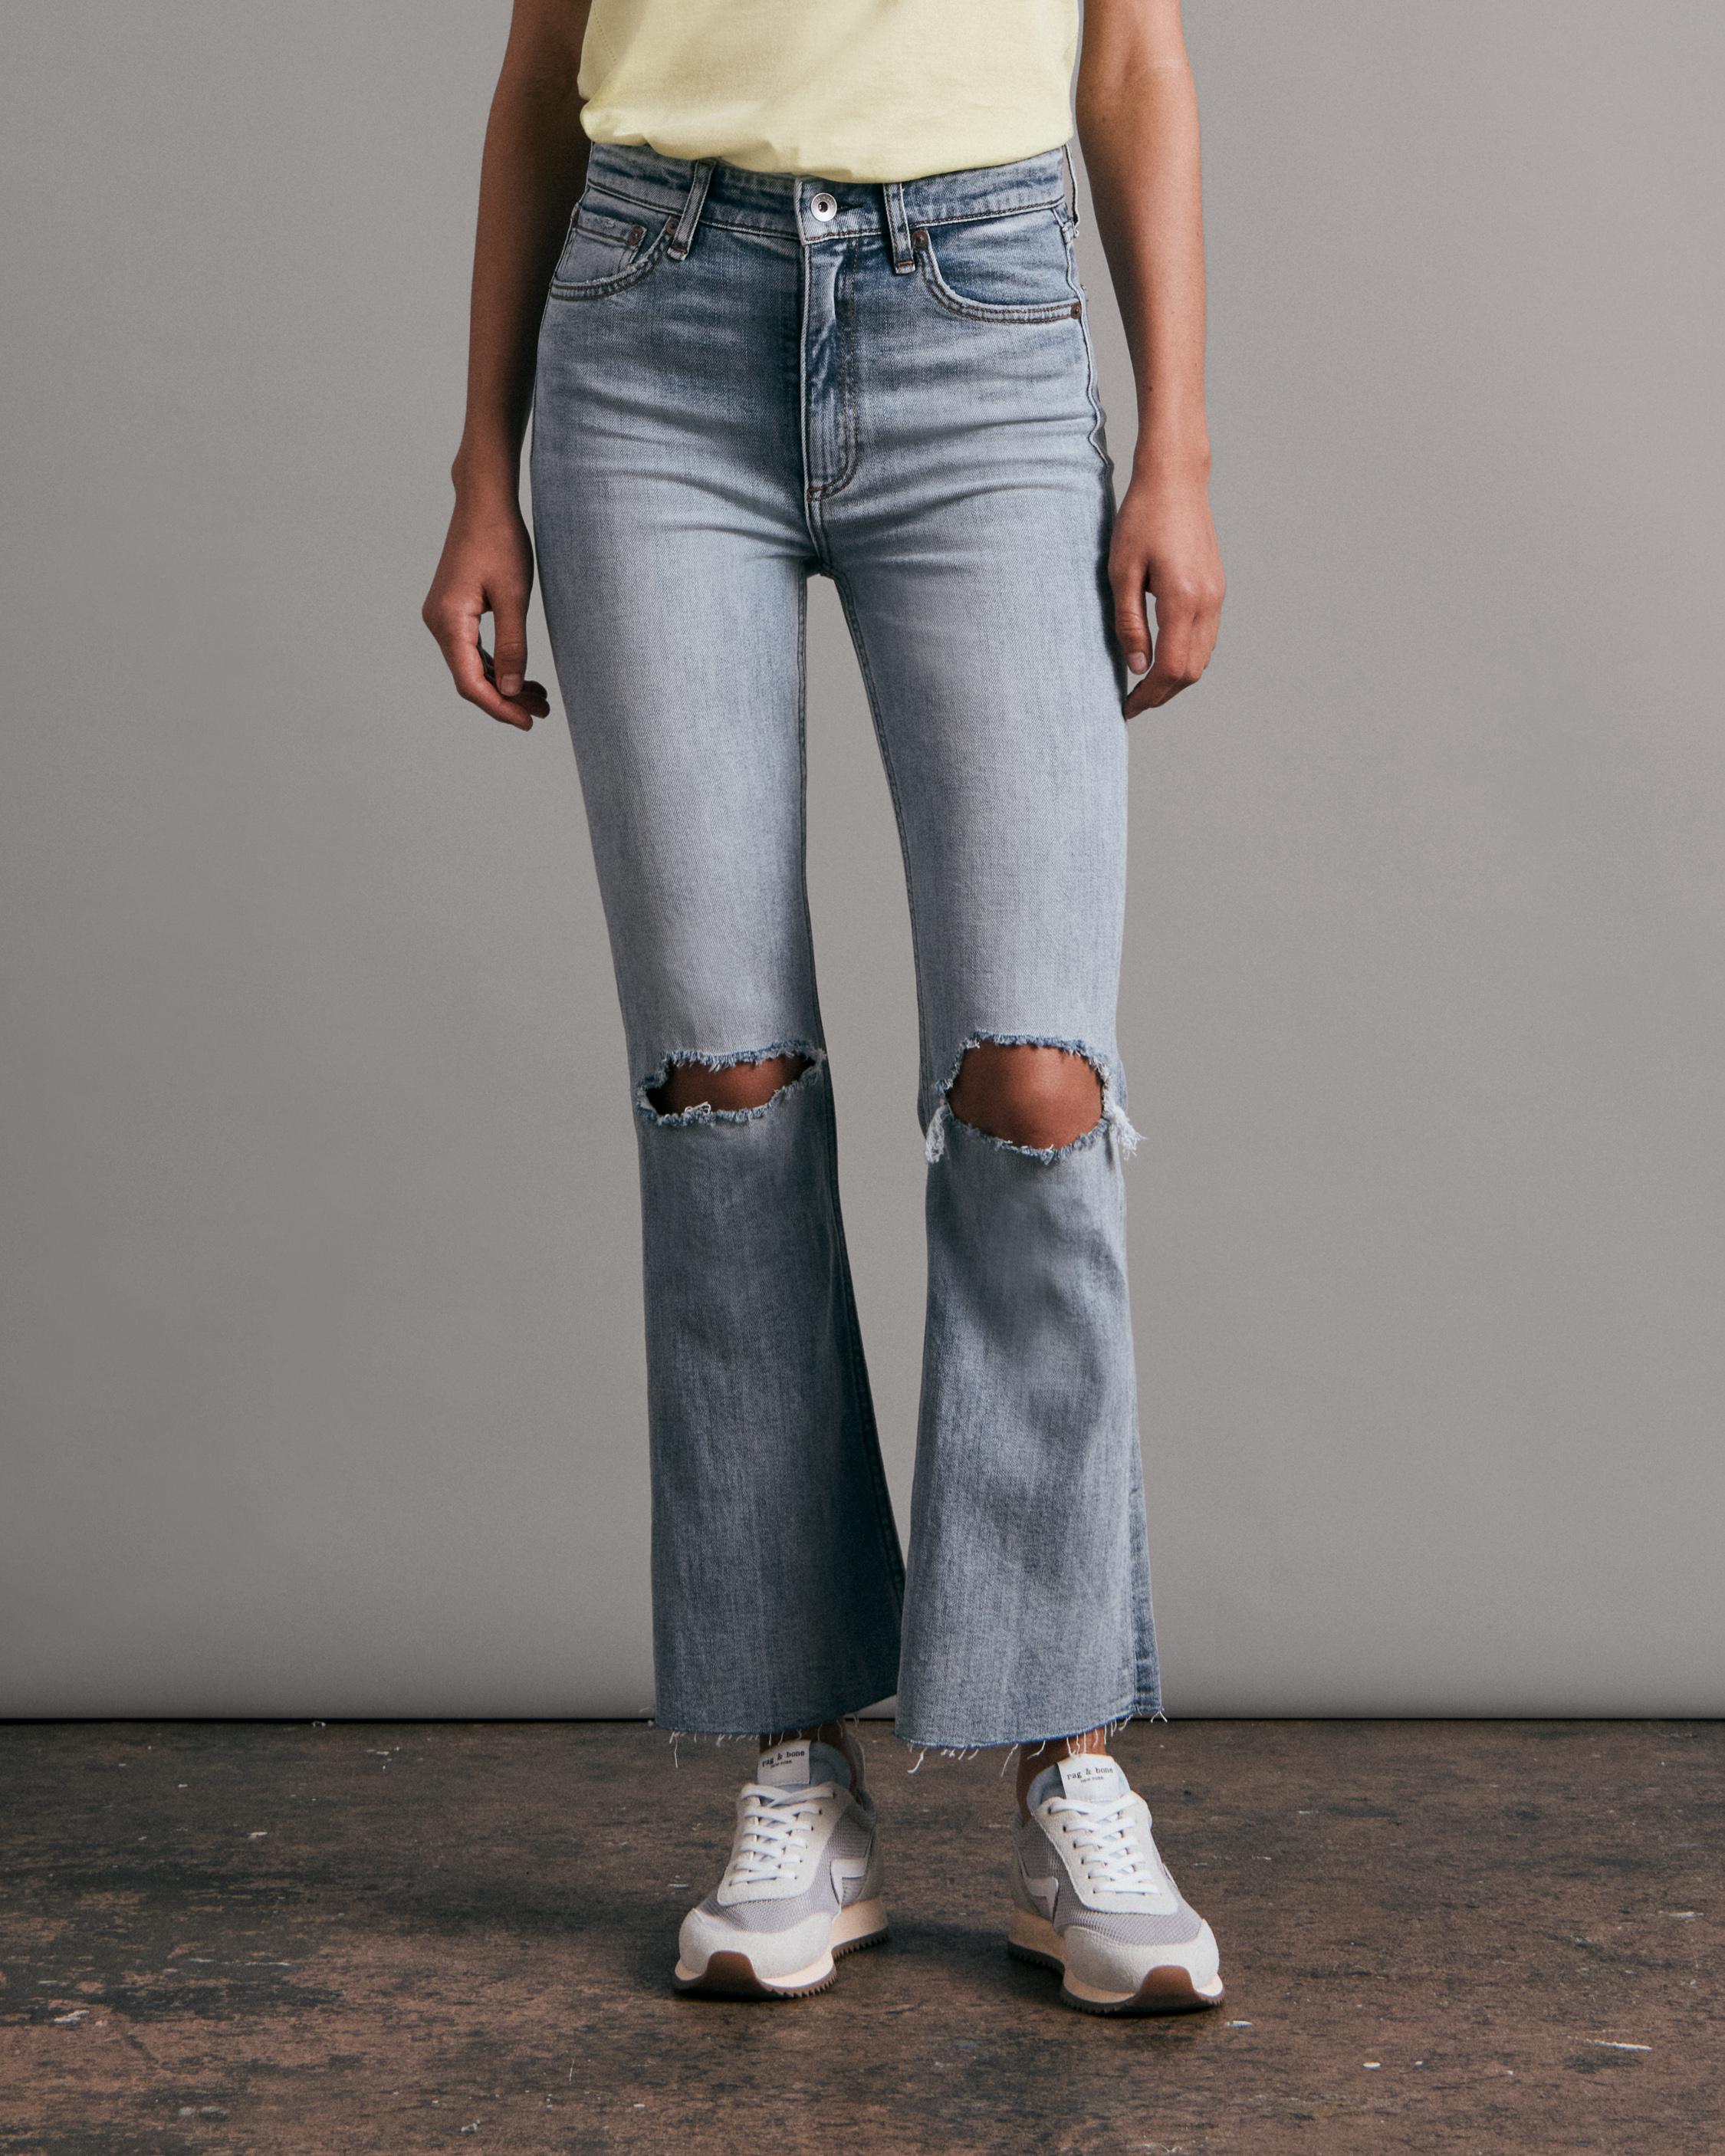 Shop Sale Jeans for Women | rag & bone